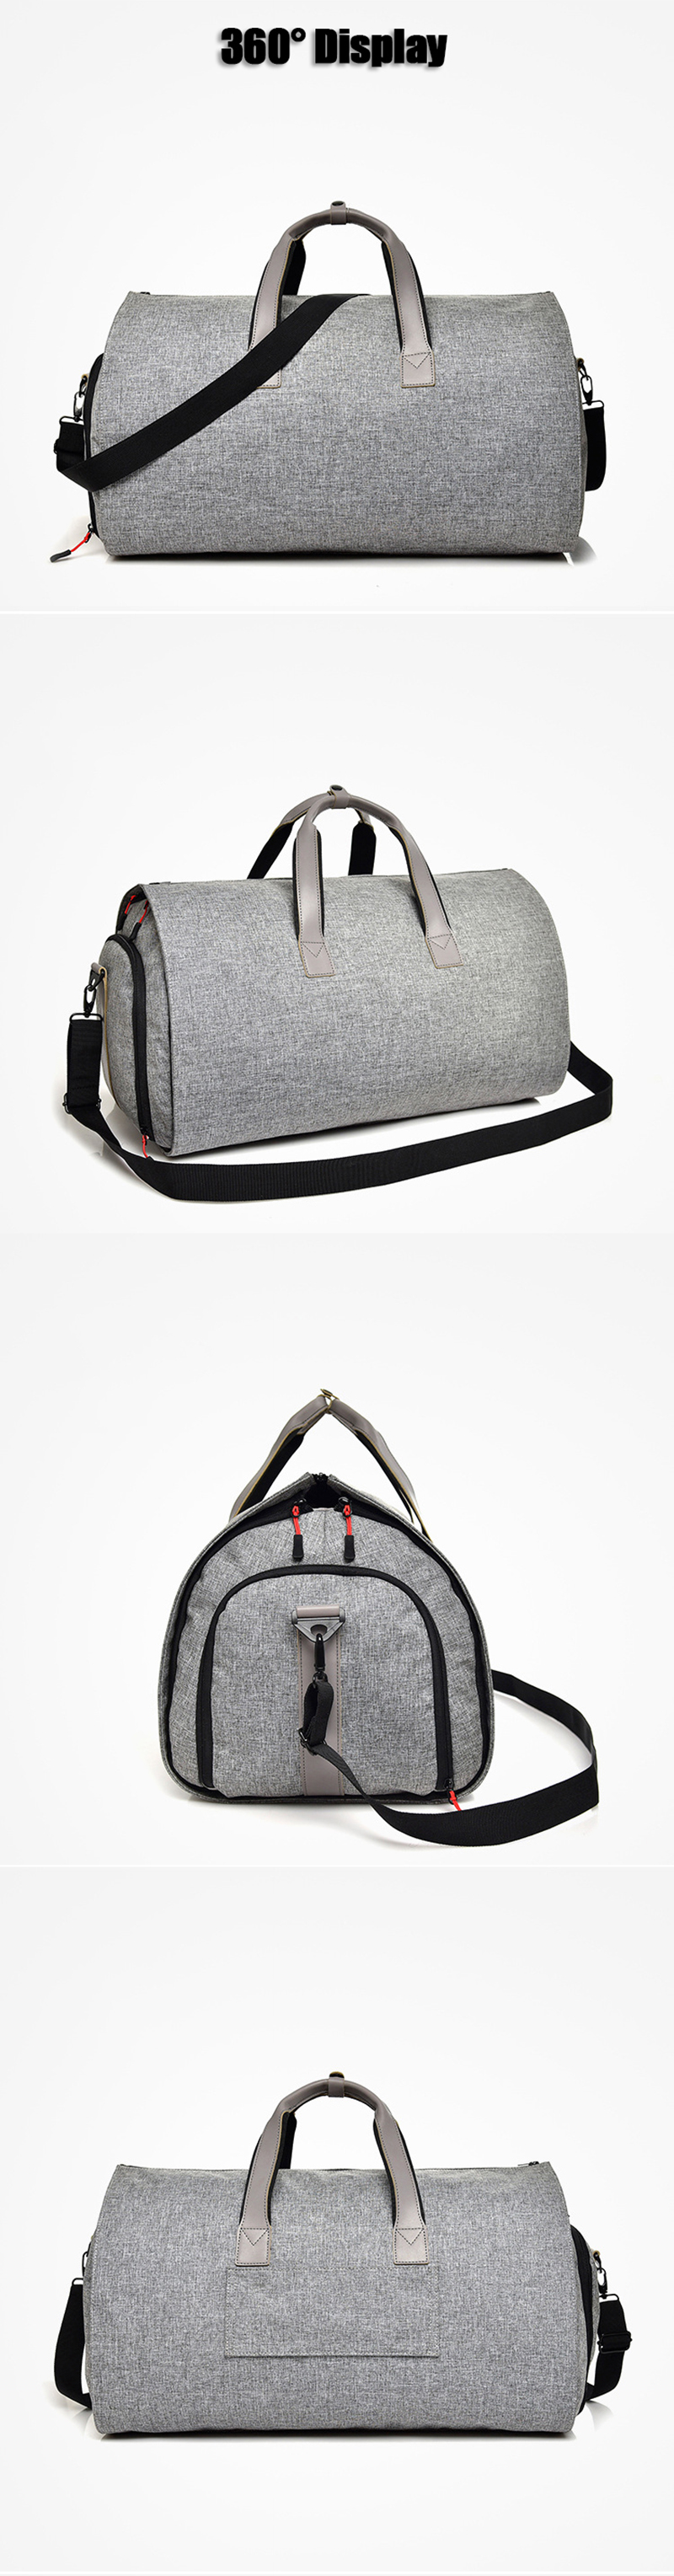 Travel-Storage-Handbag-Luggage-Bag-Foldable-Large-Capacity-Bussiness-Shoulder-Bag-Tactical-Bag-1344905-10